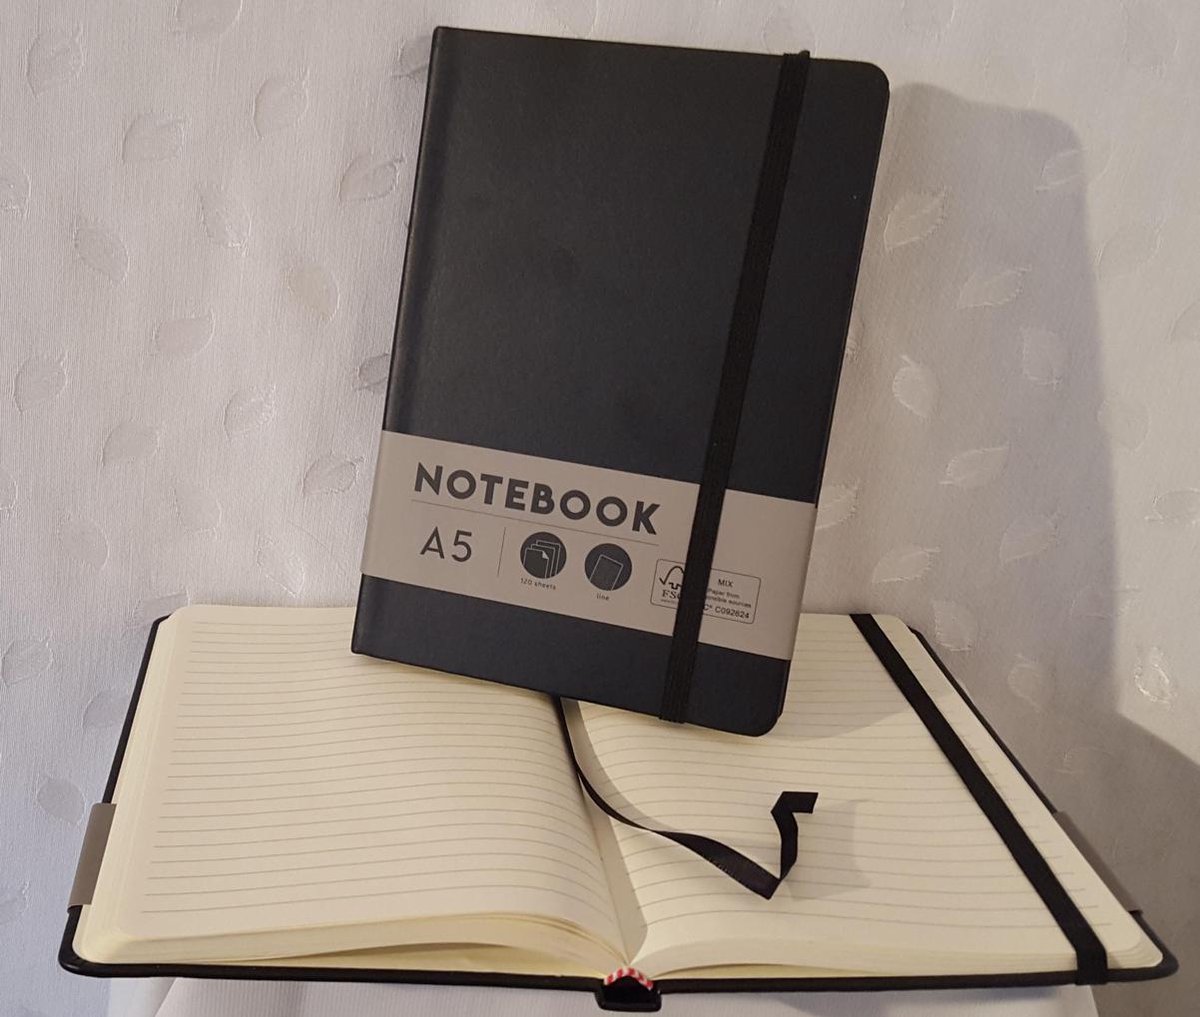 LIBOZA - Notitieboek - A5 - Zwart - met Eco pen - Gelinieerd - Hardcover - Leeslint en Elastiek - 120 blz - 21 x 14,5 cm - mooie kwaliteit - past in handtas - Cadeau - Verjaardag